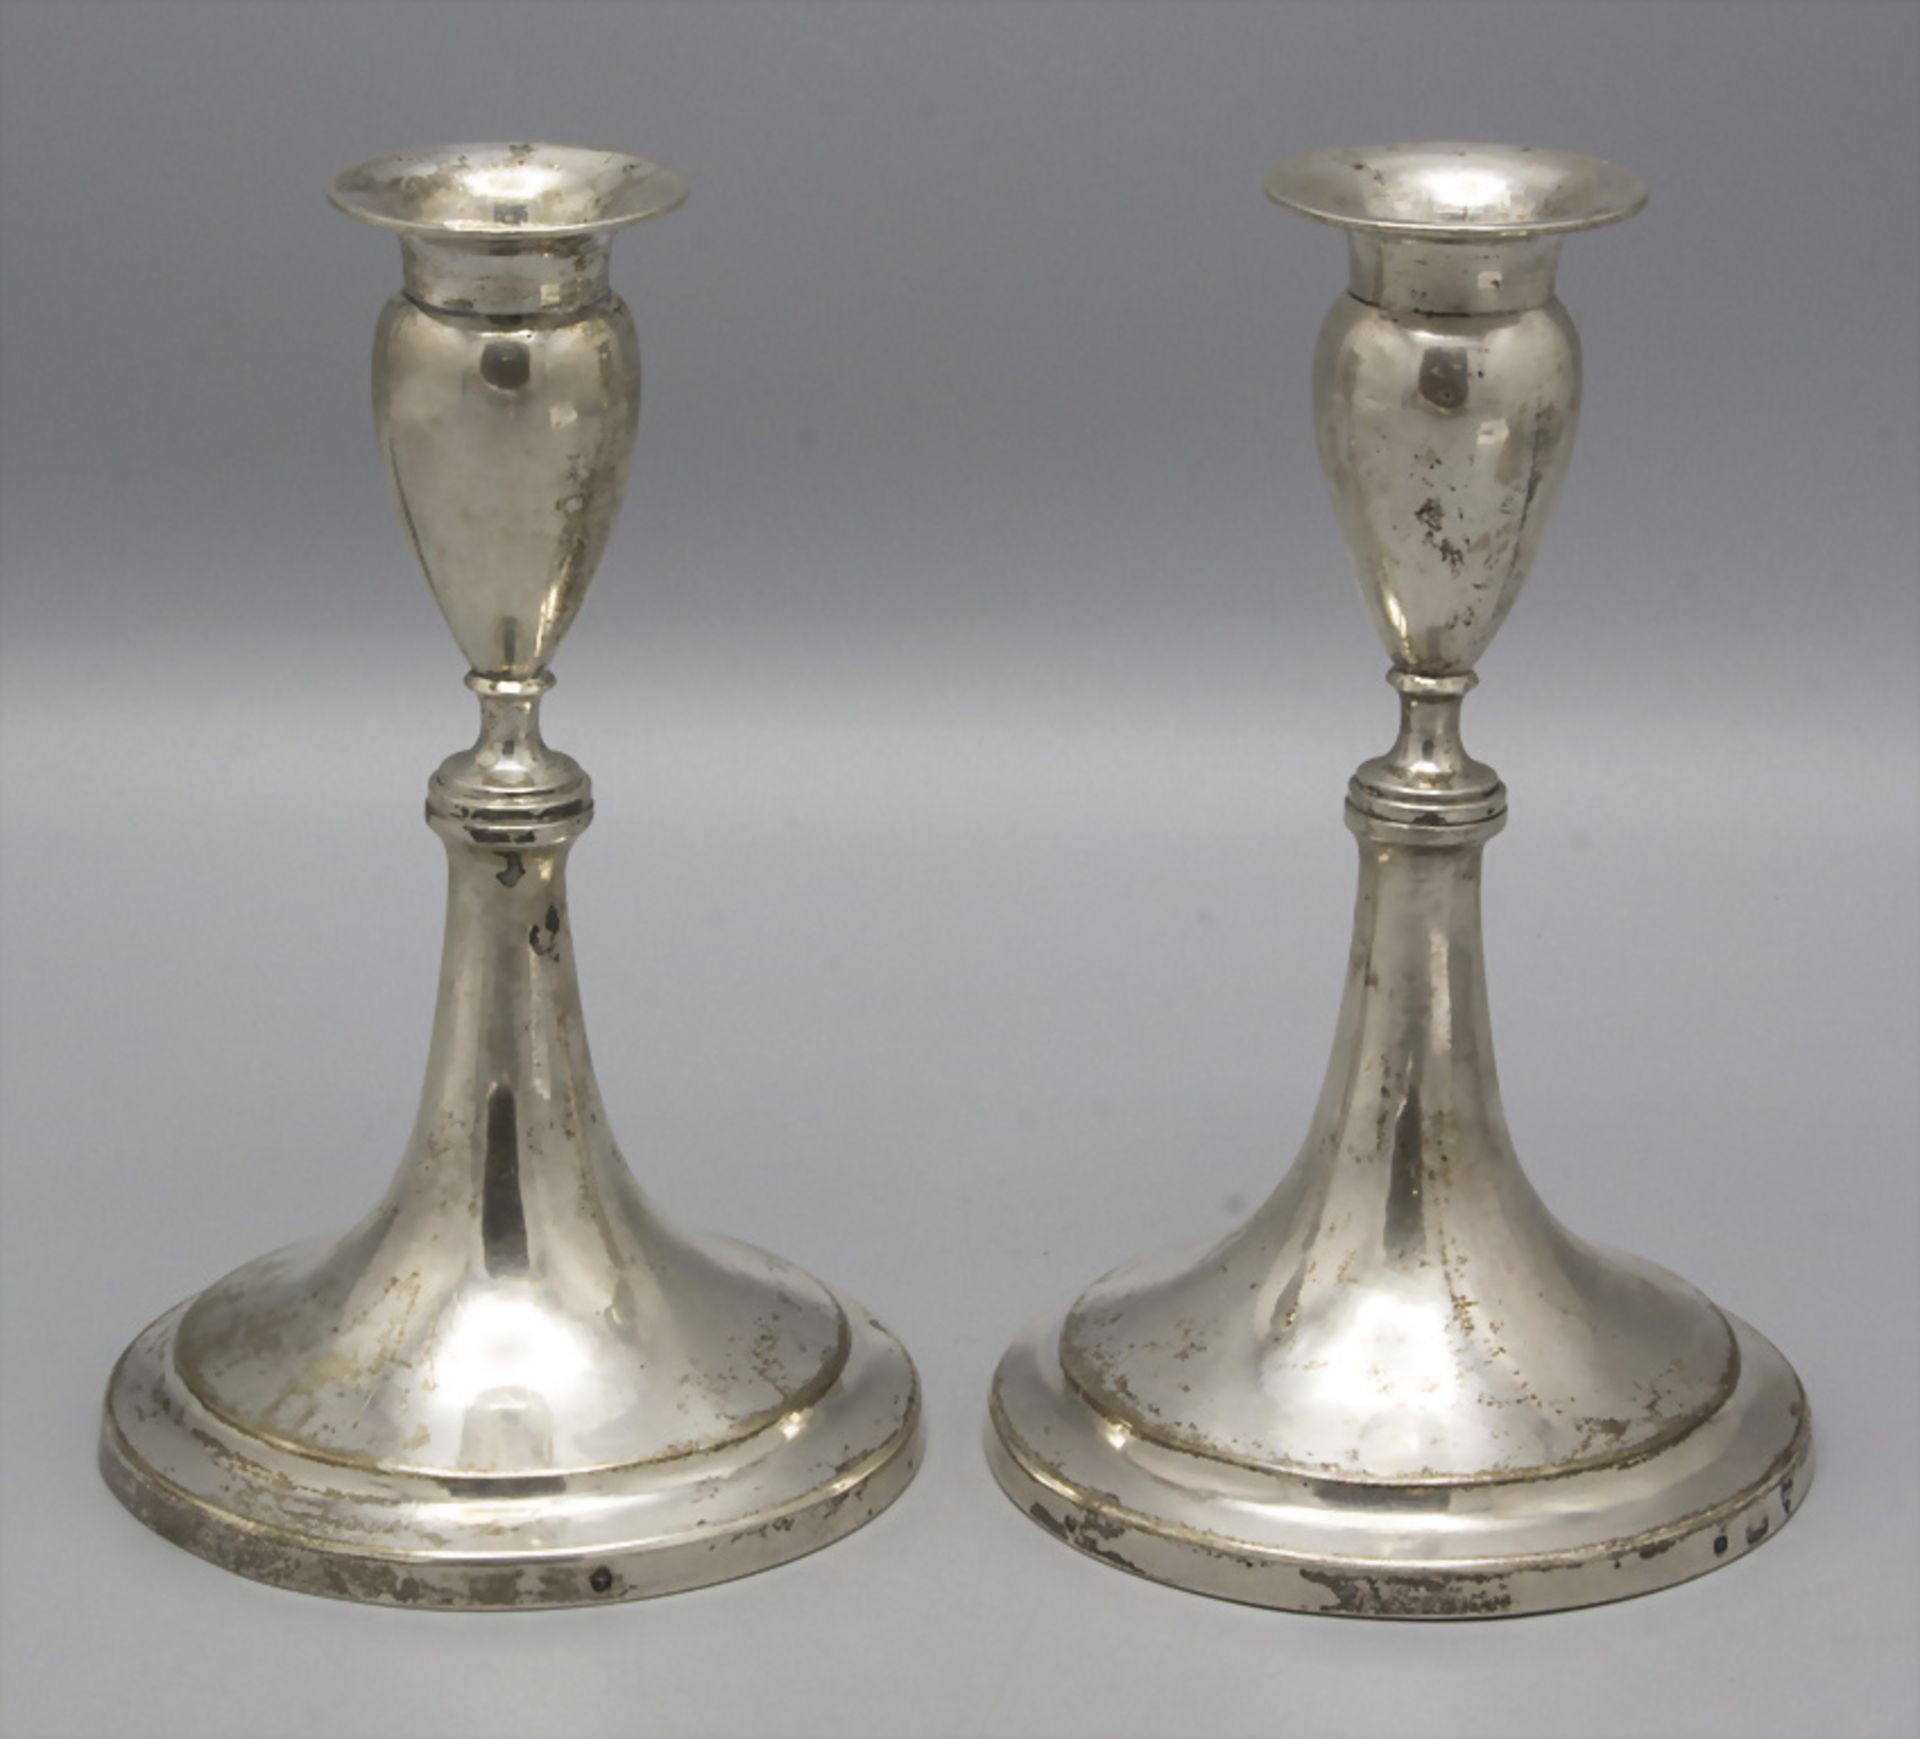 Paar Empire Reiseleuchter / A pair of Empire silver travel candlesticks, Bertold Gerder, Wien, 1818